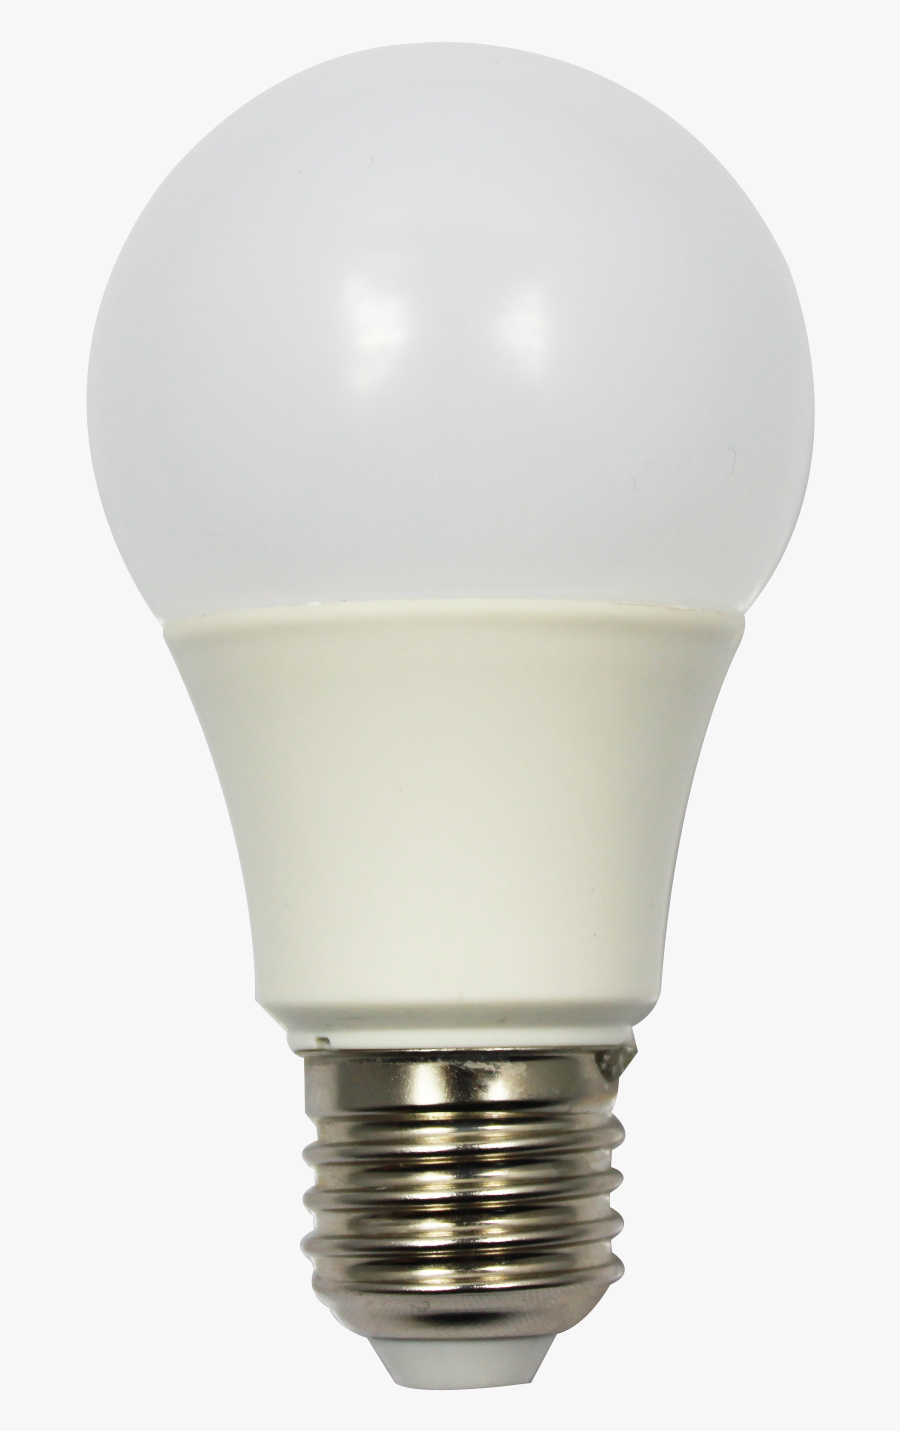 Incandescent Light Bulb Led Lamp Light-emitting Diode - Led Bulb Images Png, Transparent Clipart